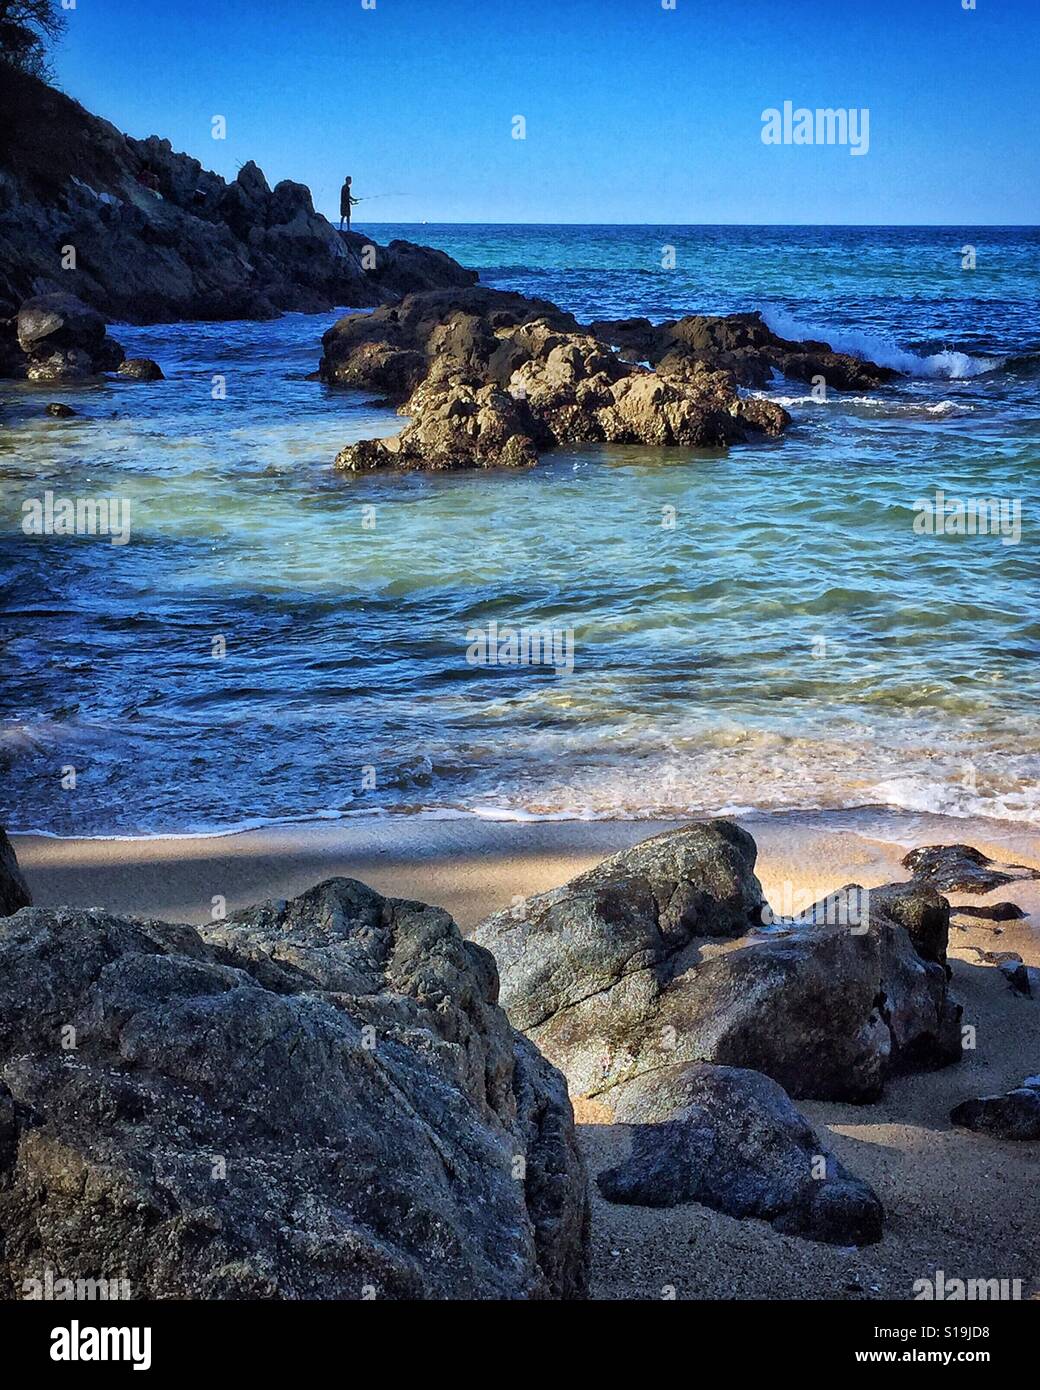 In lontananza un uomo sorge su uno sperone roccioso a punto la pesca su questo robusto e bellissimo tratto di spiaggia della Riviera Nayarit. Foto Stock